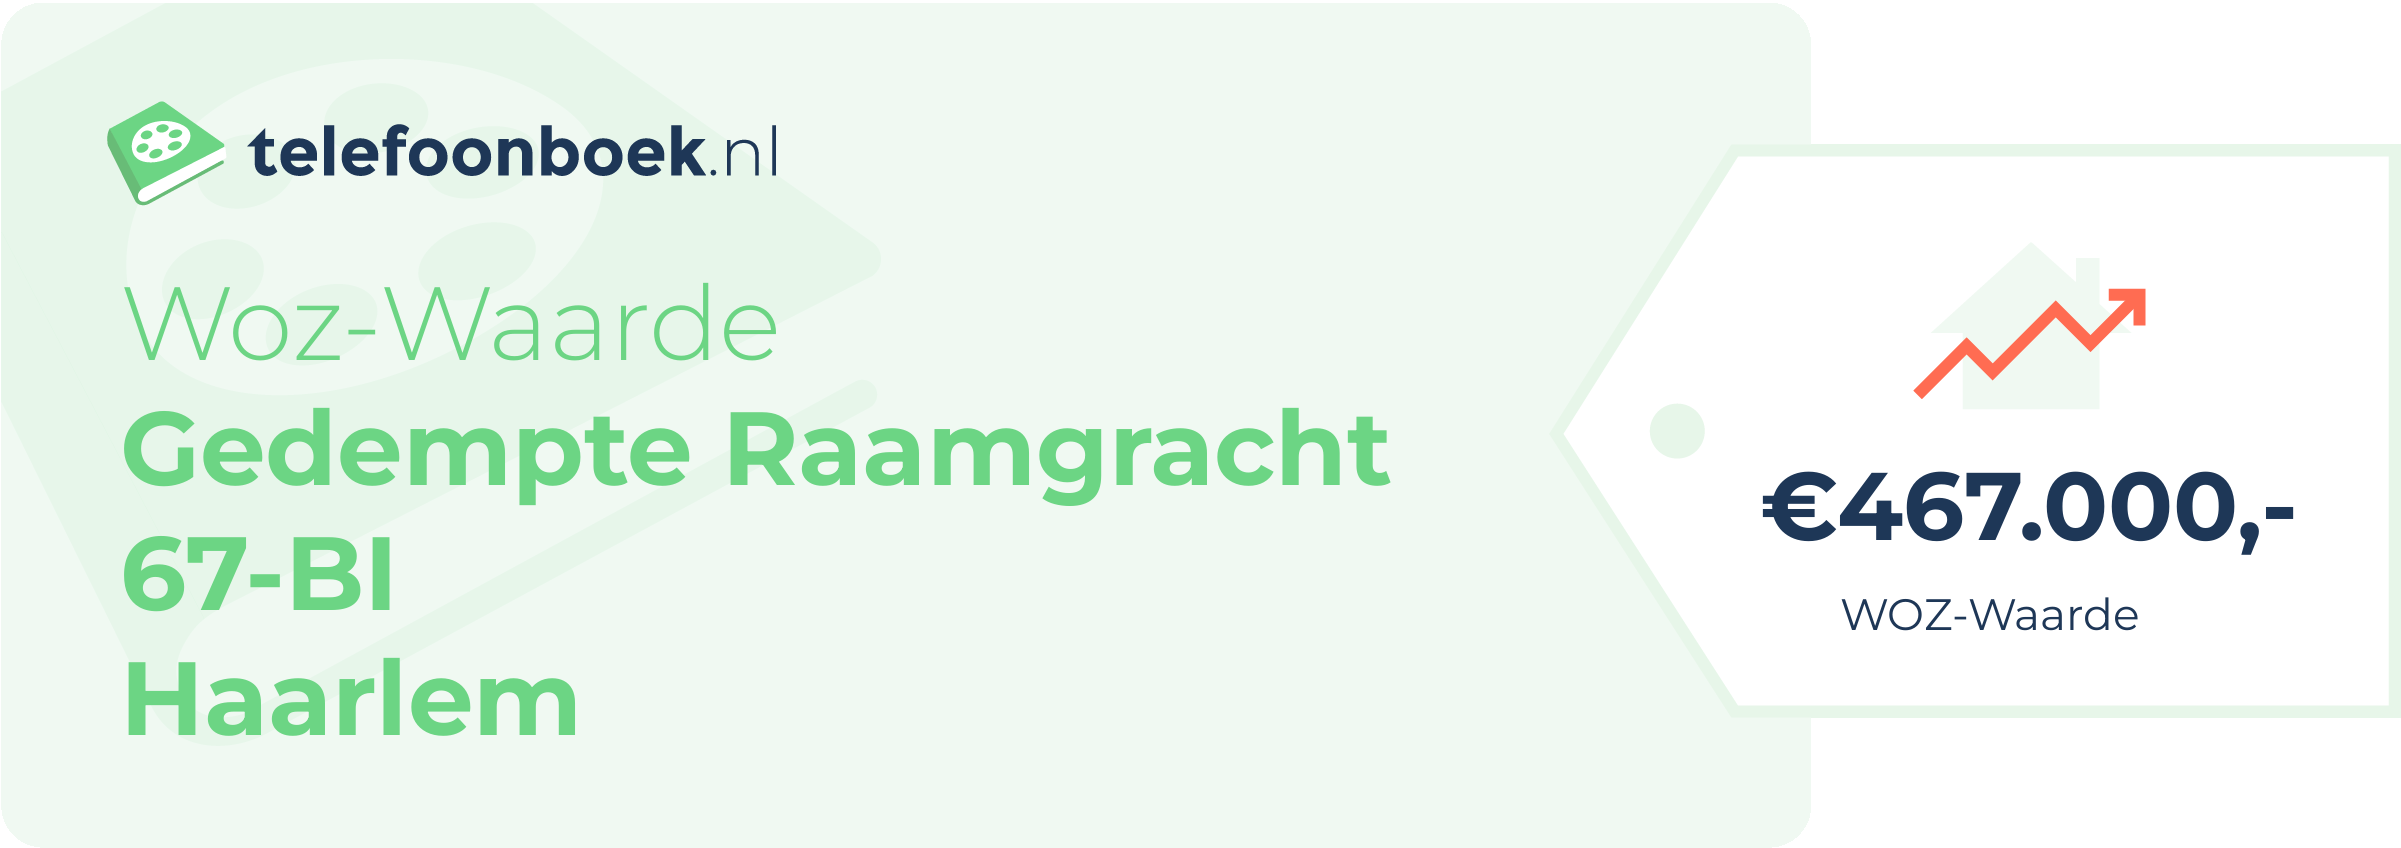 WOZ-waarde Gedempte Raamgracht 67-BI Haarlem